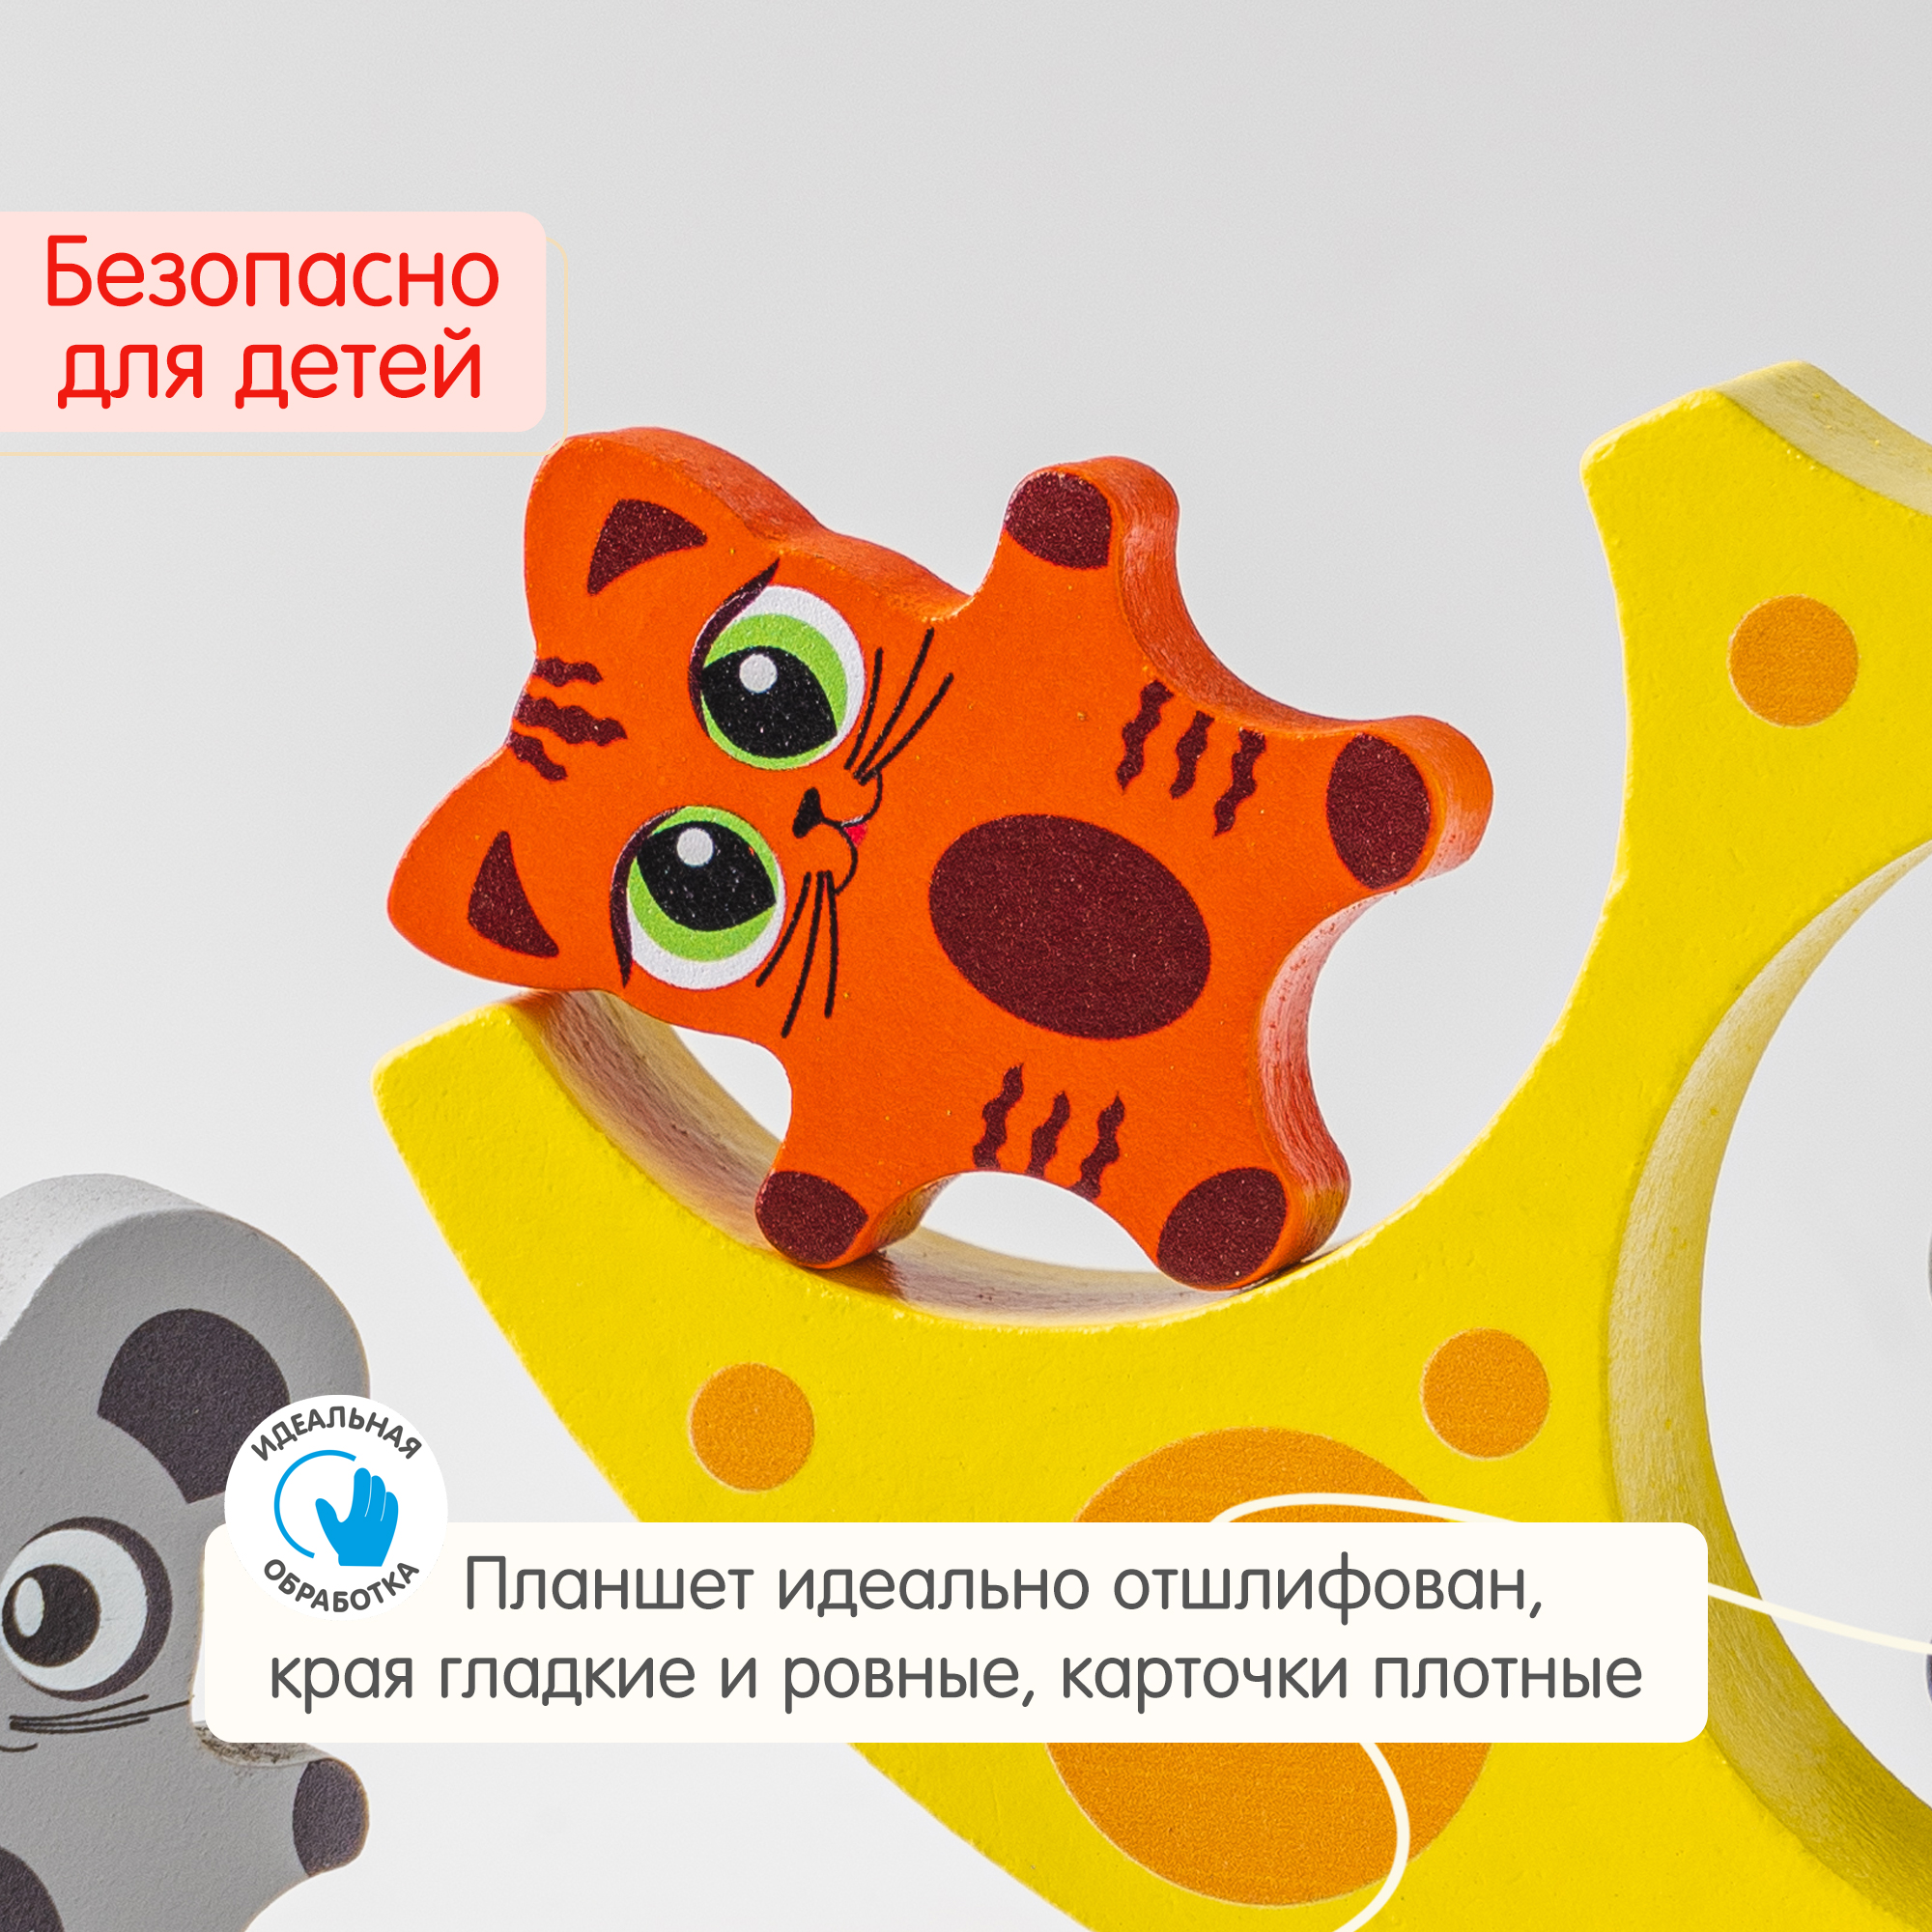 Балансир Кошки-Мышки Alatoys 8 фигурок деревянная развивающая игра - фото 7